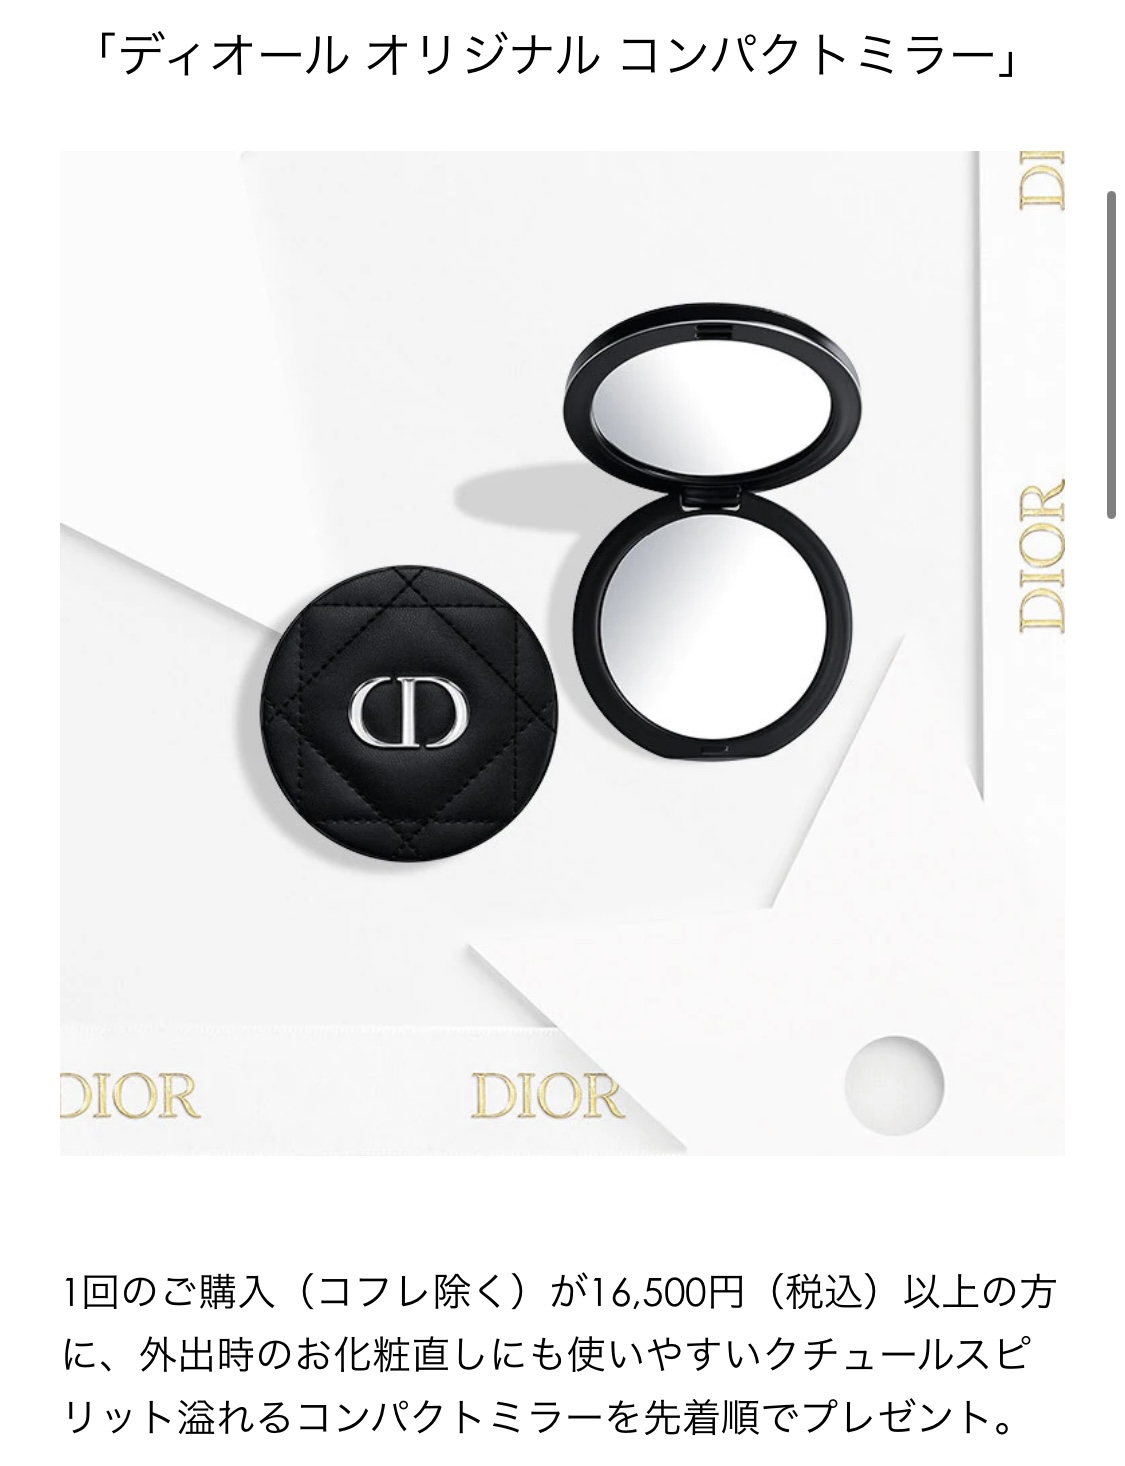 オンラインショップ Dior ミラー ノベルティ ミラー - lotnet.com